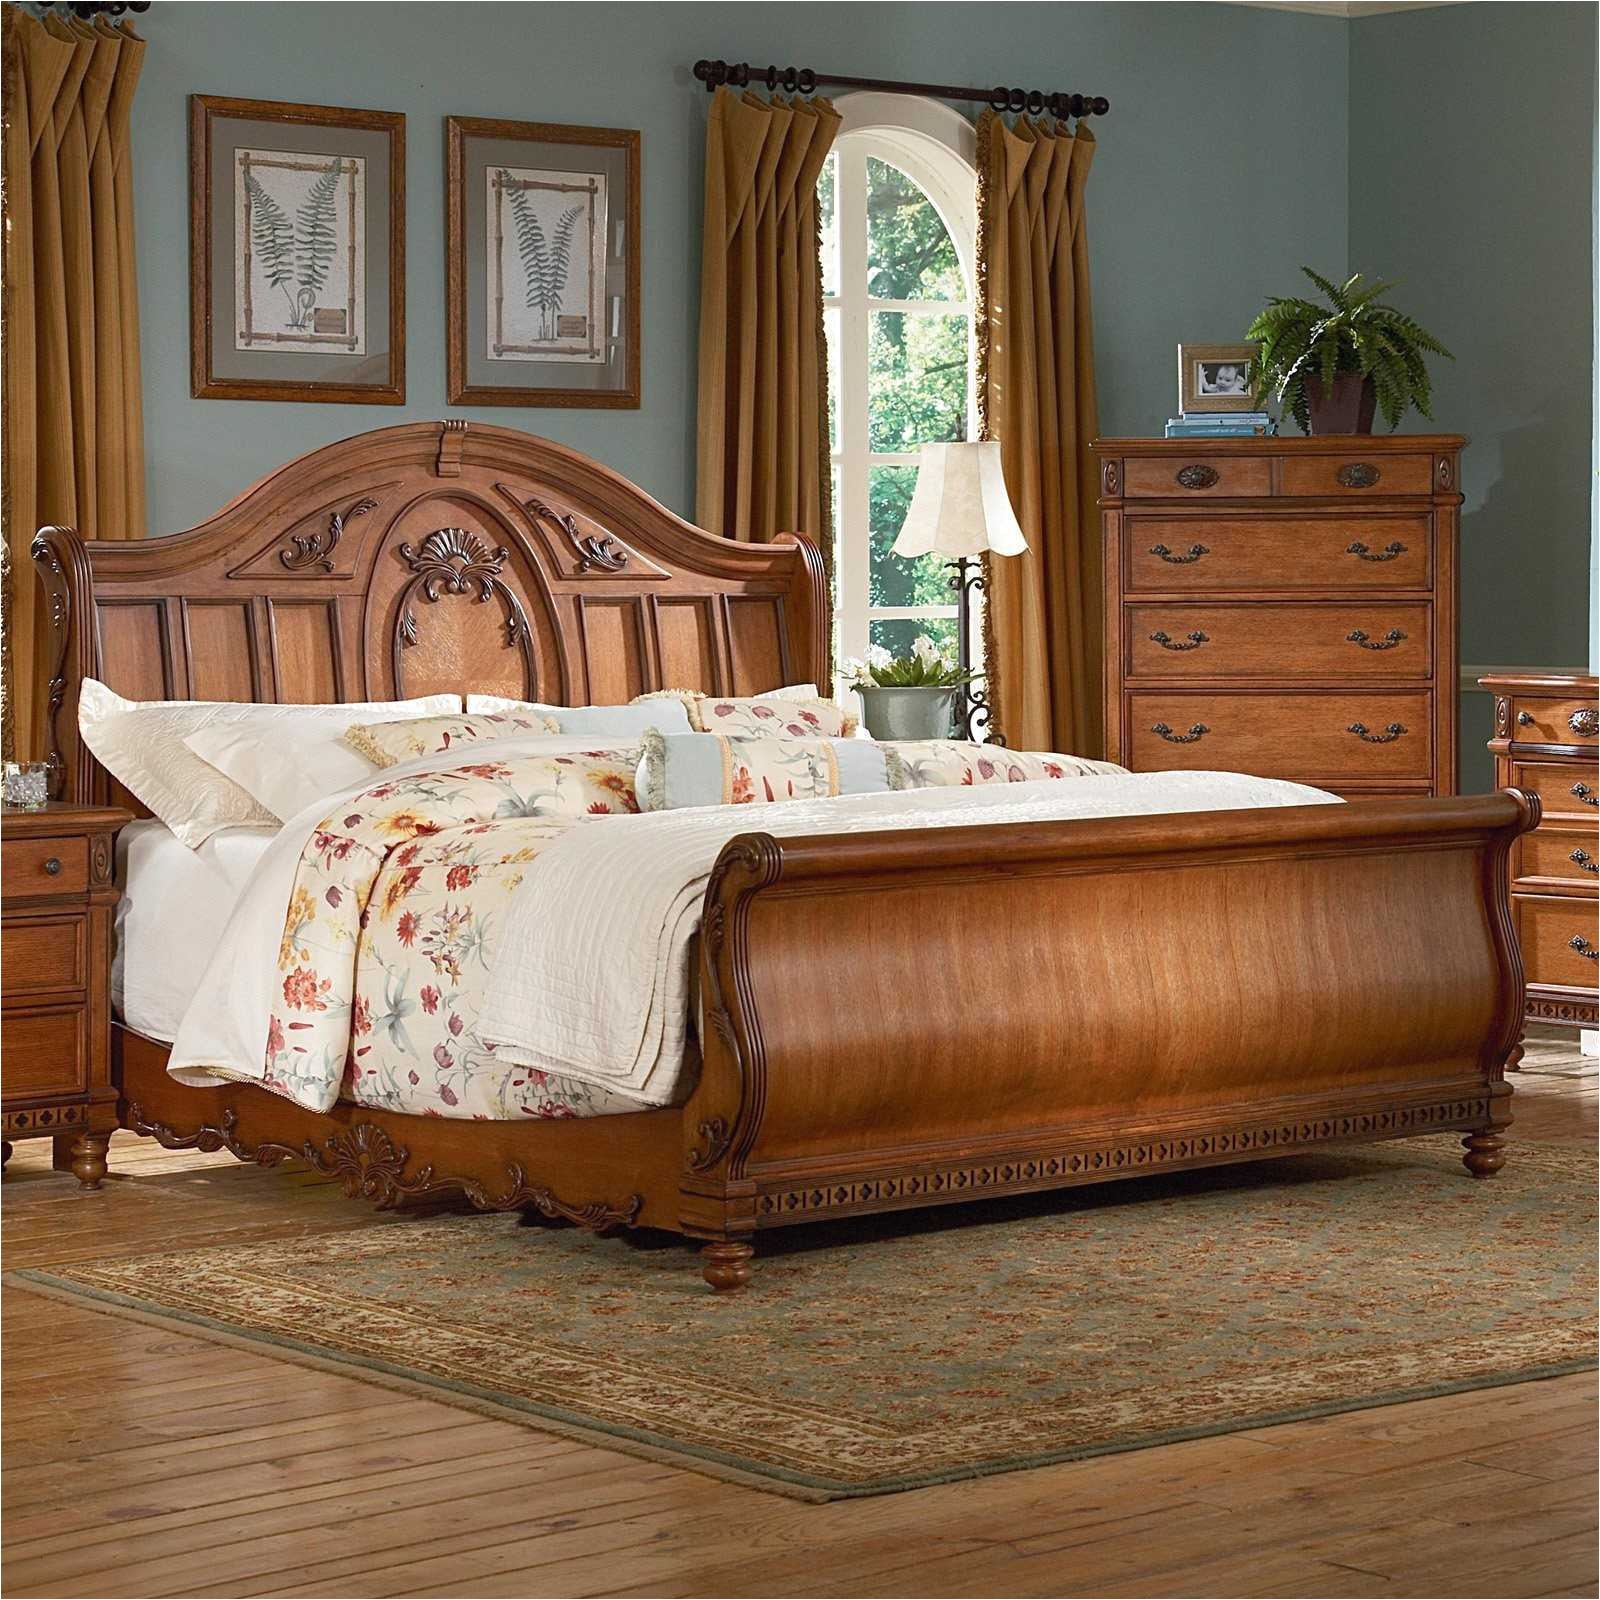 light colored bedroom sets unique light colored bedroom furniture sets inspirational stylish light oak